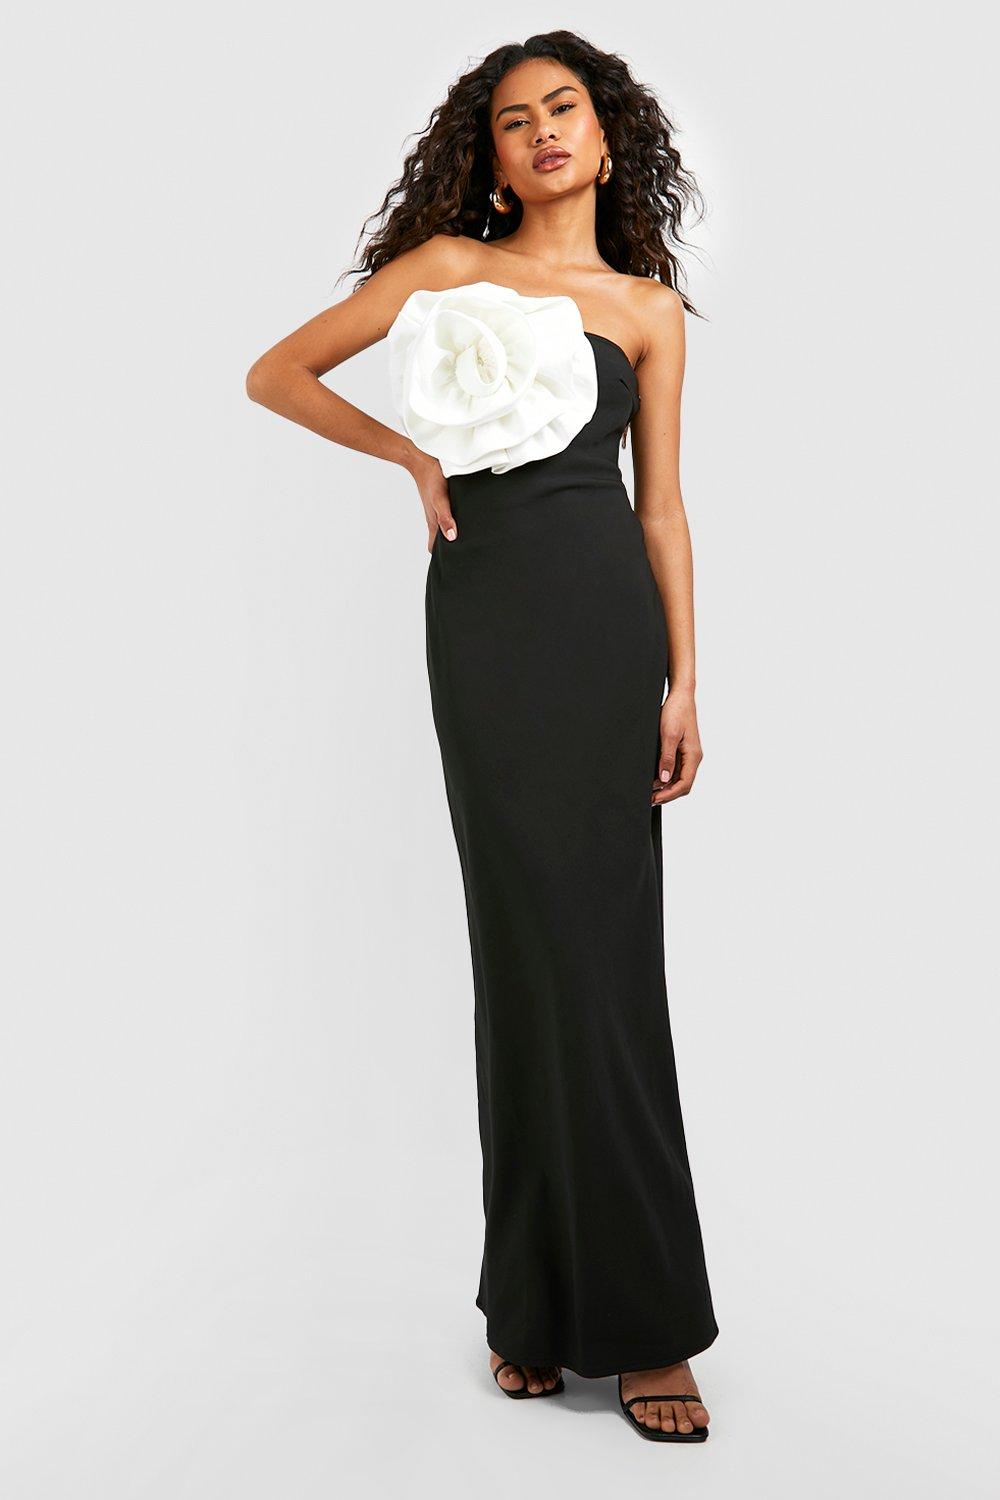 Vintage Evening Dresses, Vintage Formal Dresses Womens Rose Detail Bandeau Maxi Dress - Black - 14 $55.00 AT vintagedancer.com